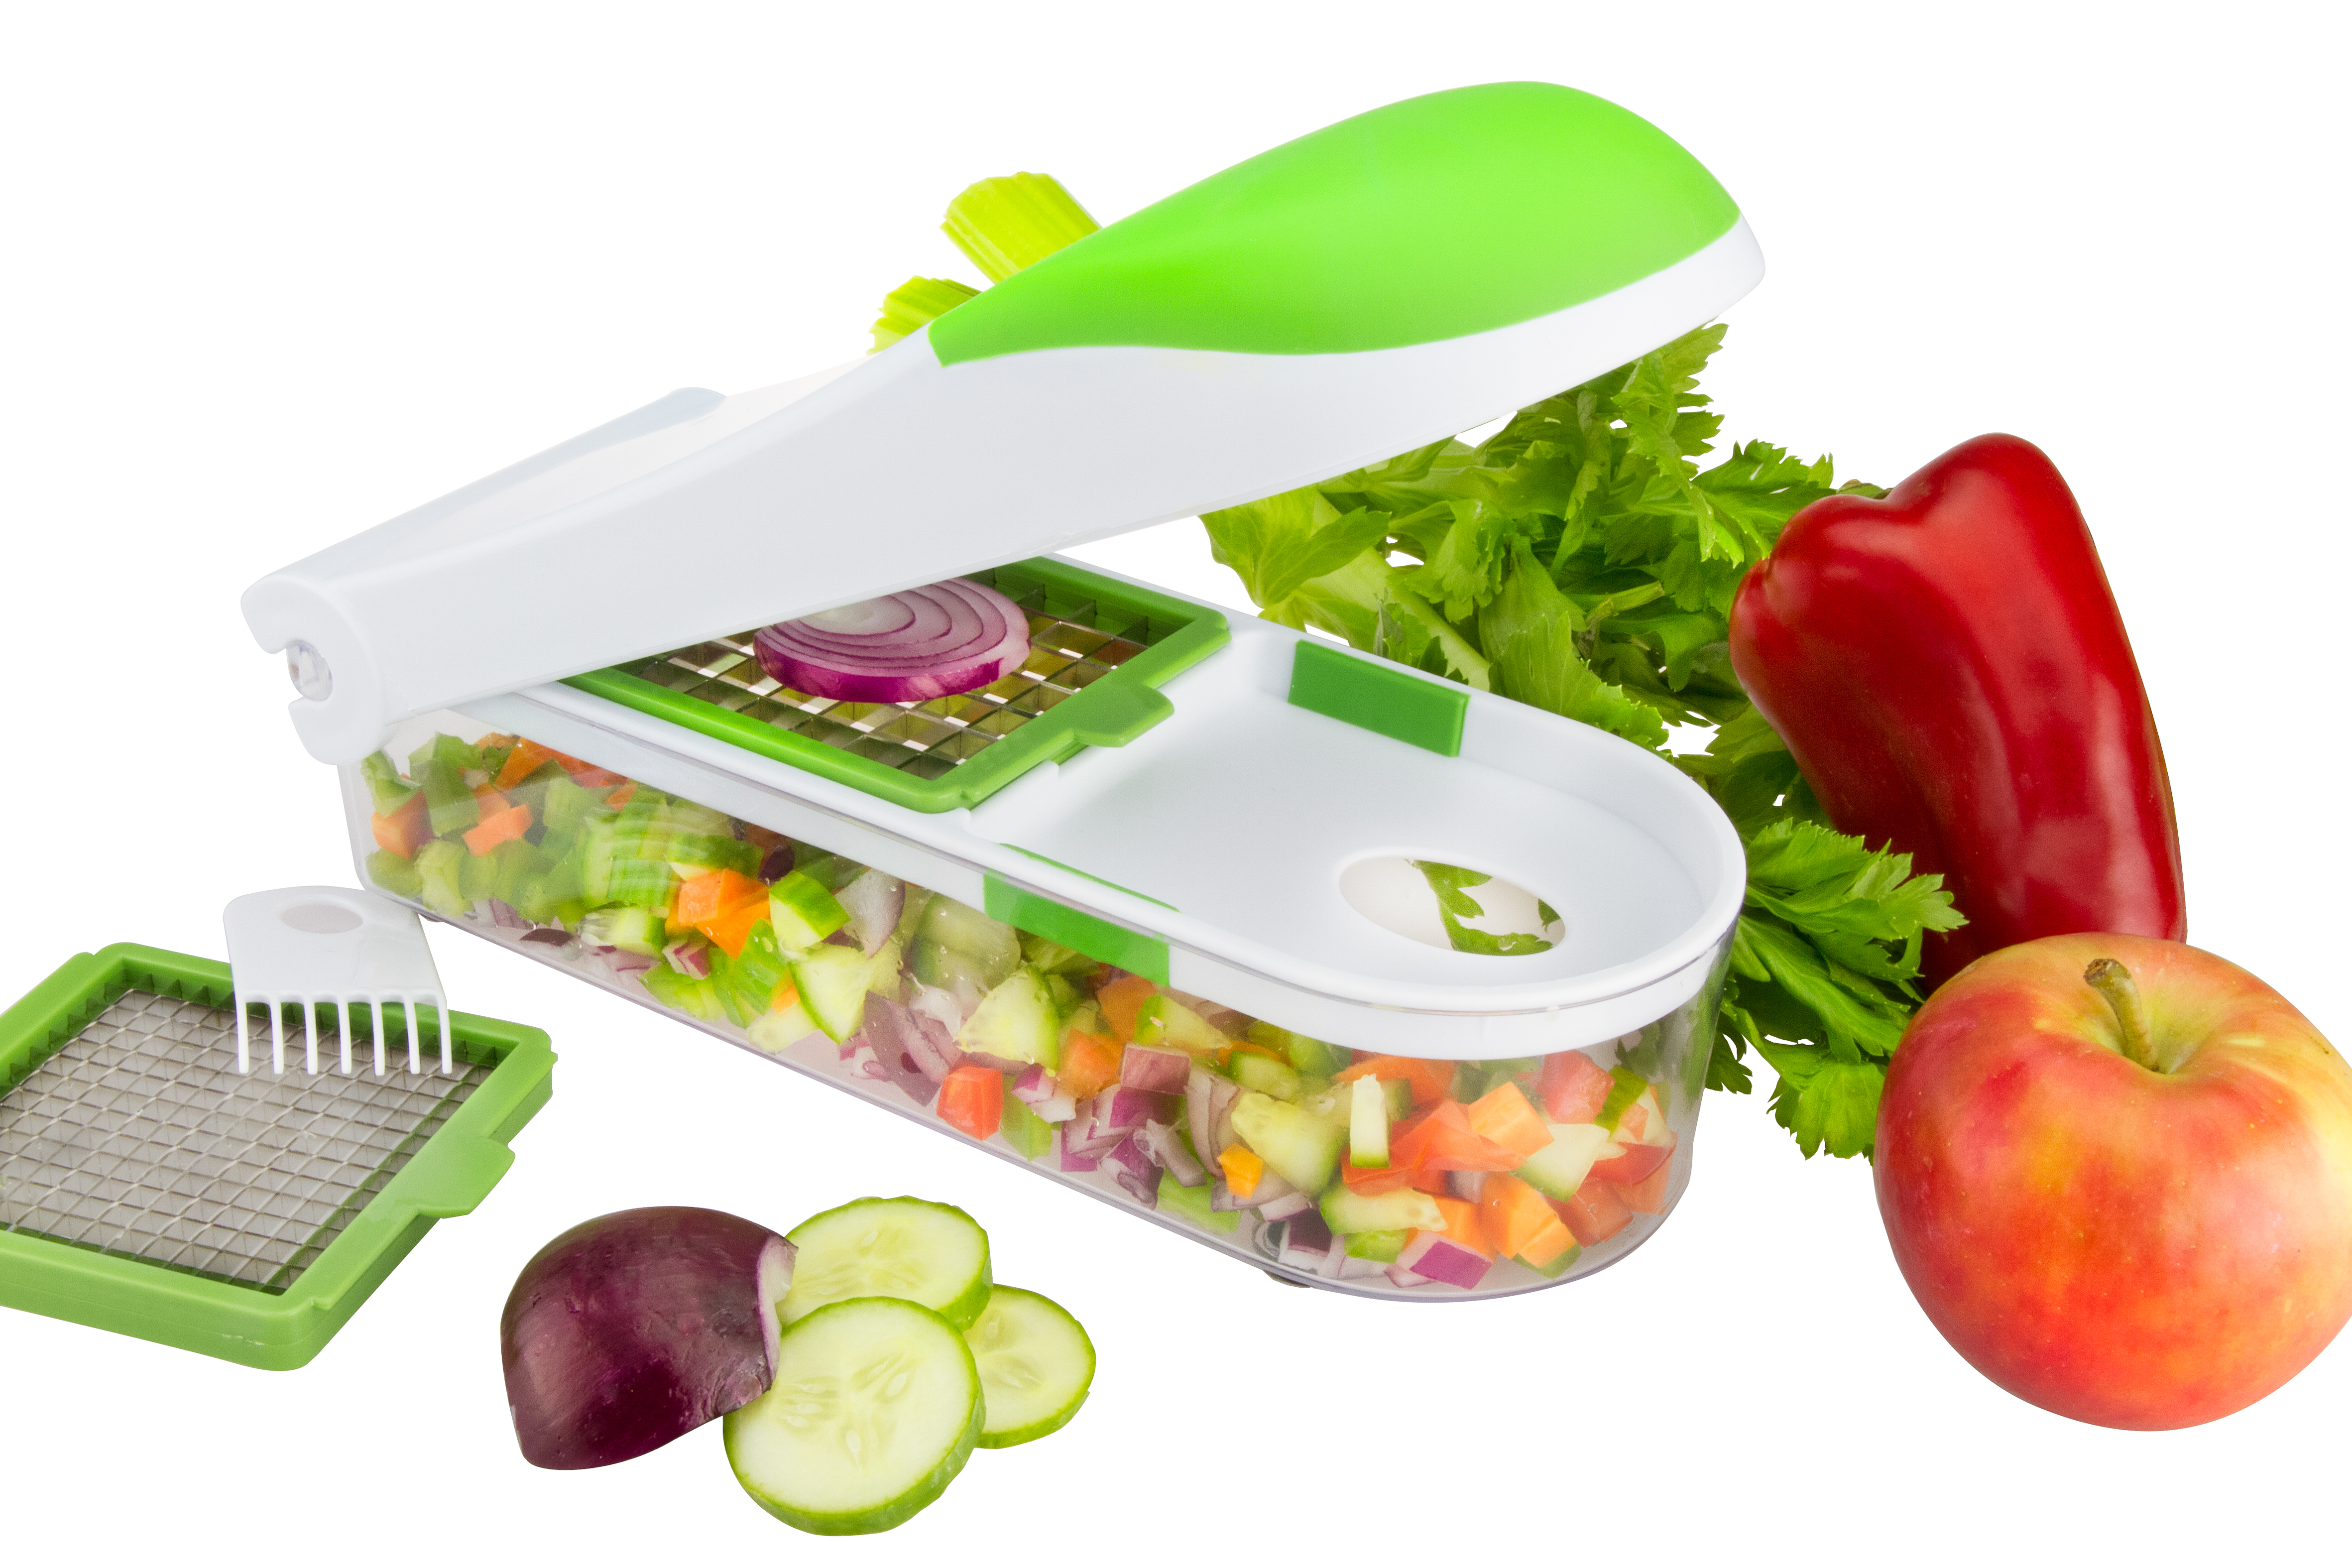 Brieftons Quickpush Food Chopper: Vegetable Chopper Dicer Slicer